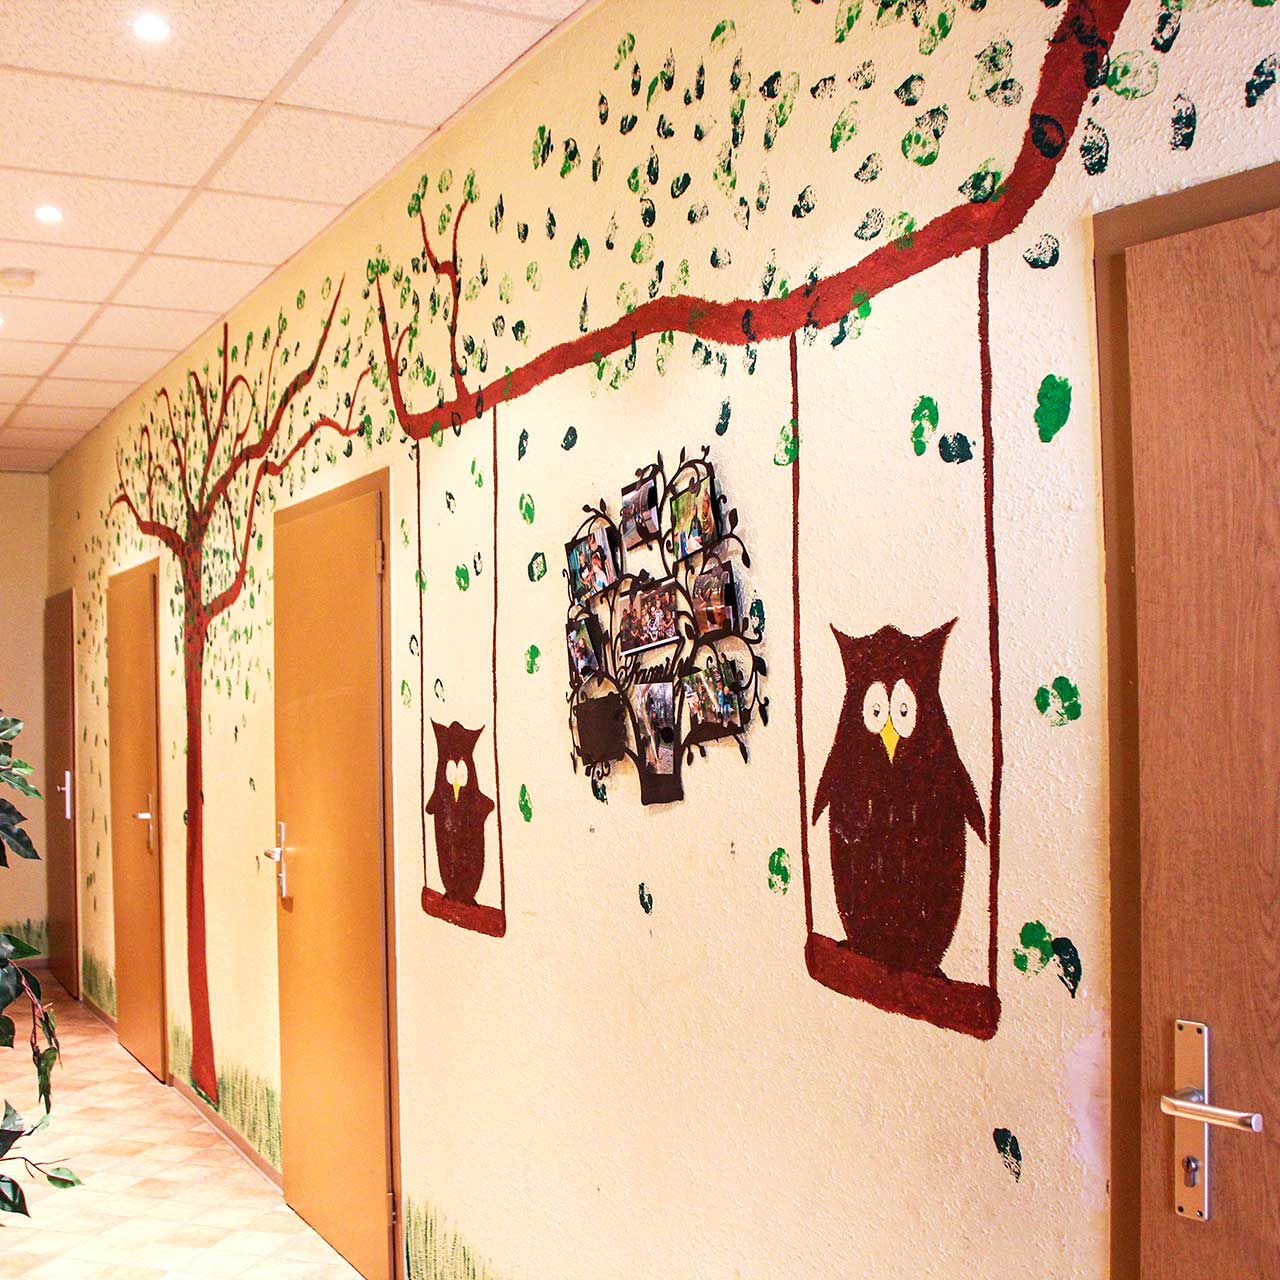 Der Flurbereich mit fünf Eingangstüren in die jeweiligen Zimmer. Die Wand ist mit einem Baum, Blättern, Schaukeln und Eulen bemalt.